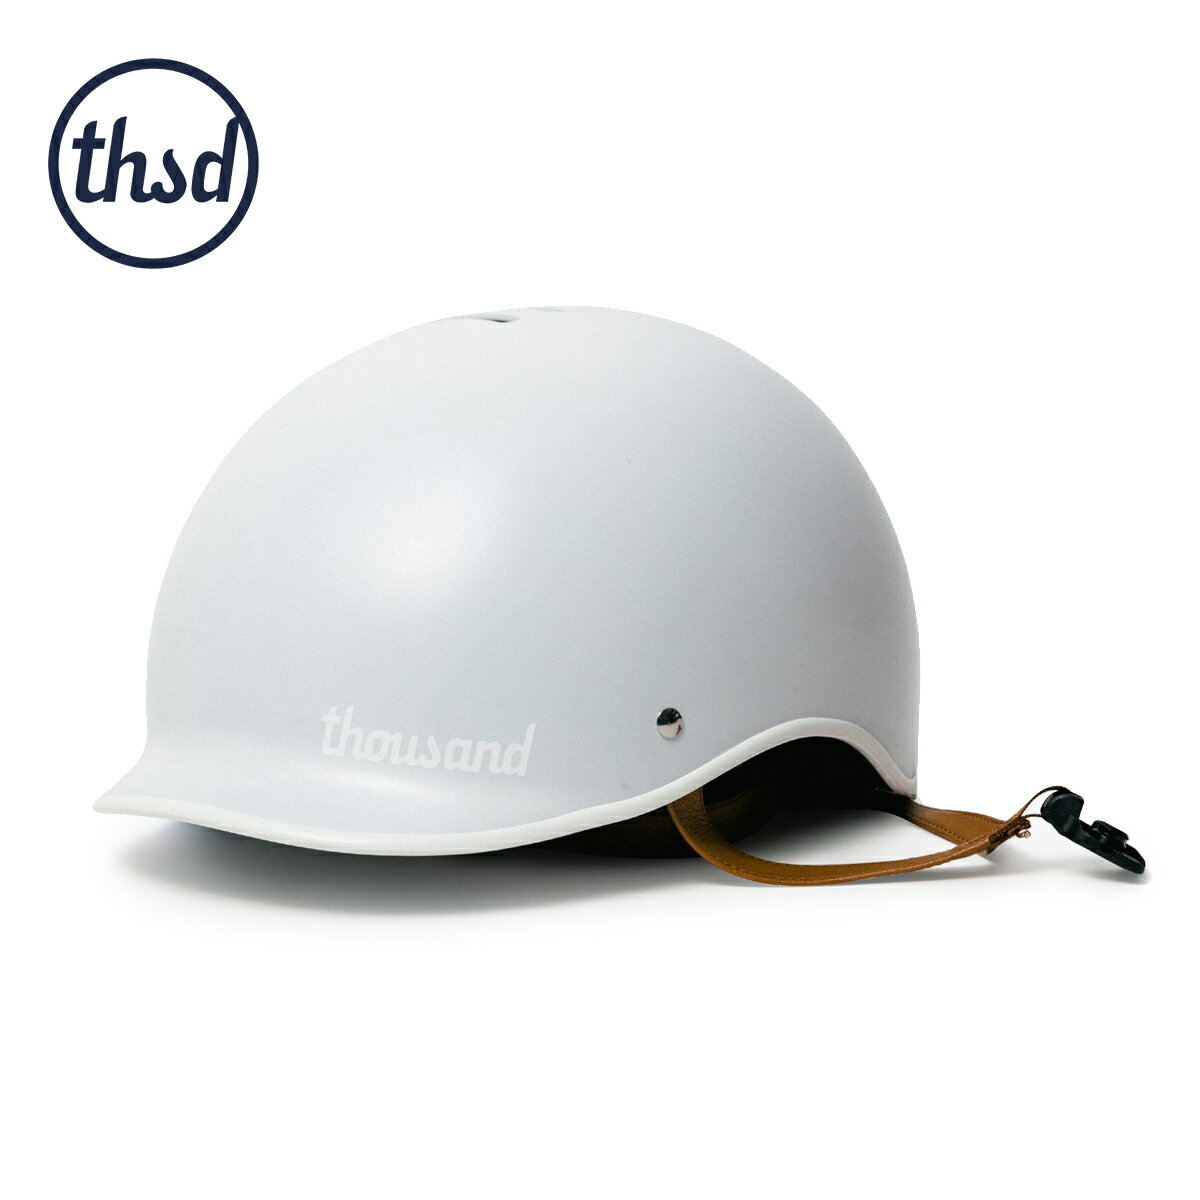 Thousand サウザンド Thousand Helmet メンズ/レディース アークティックグレー S-L